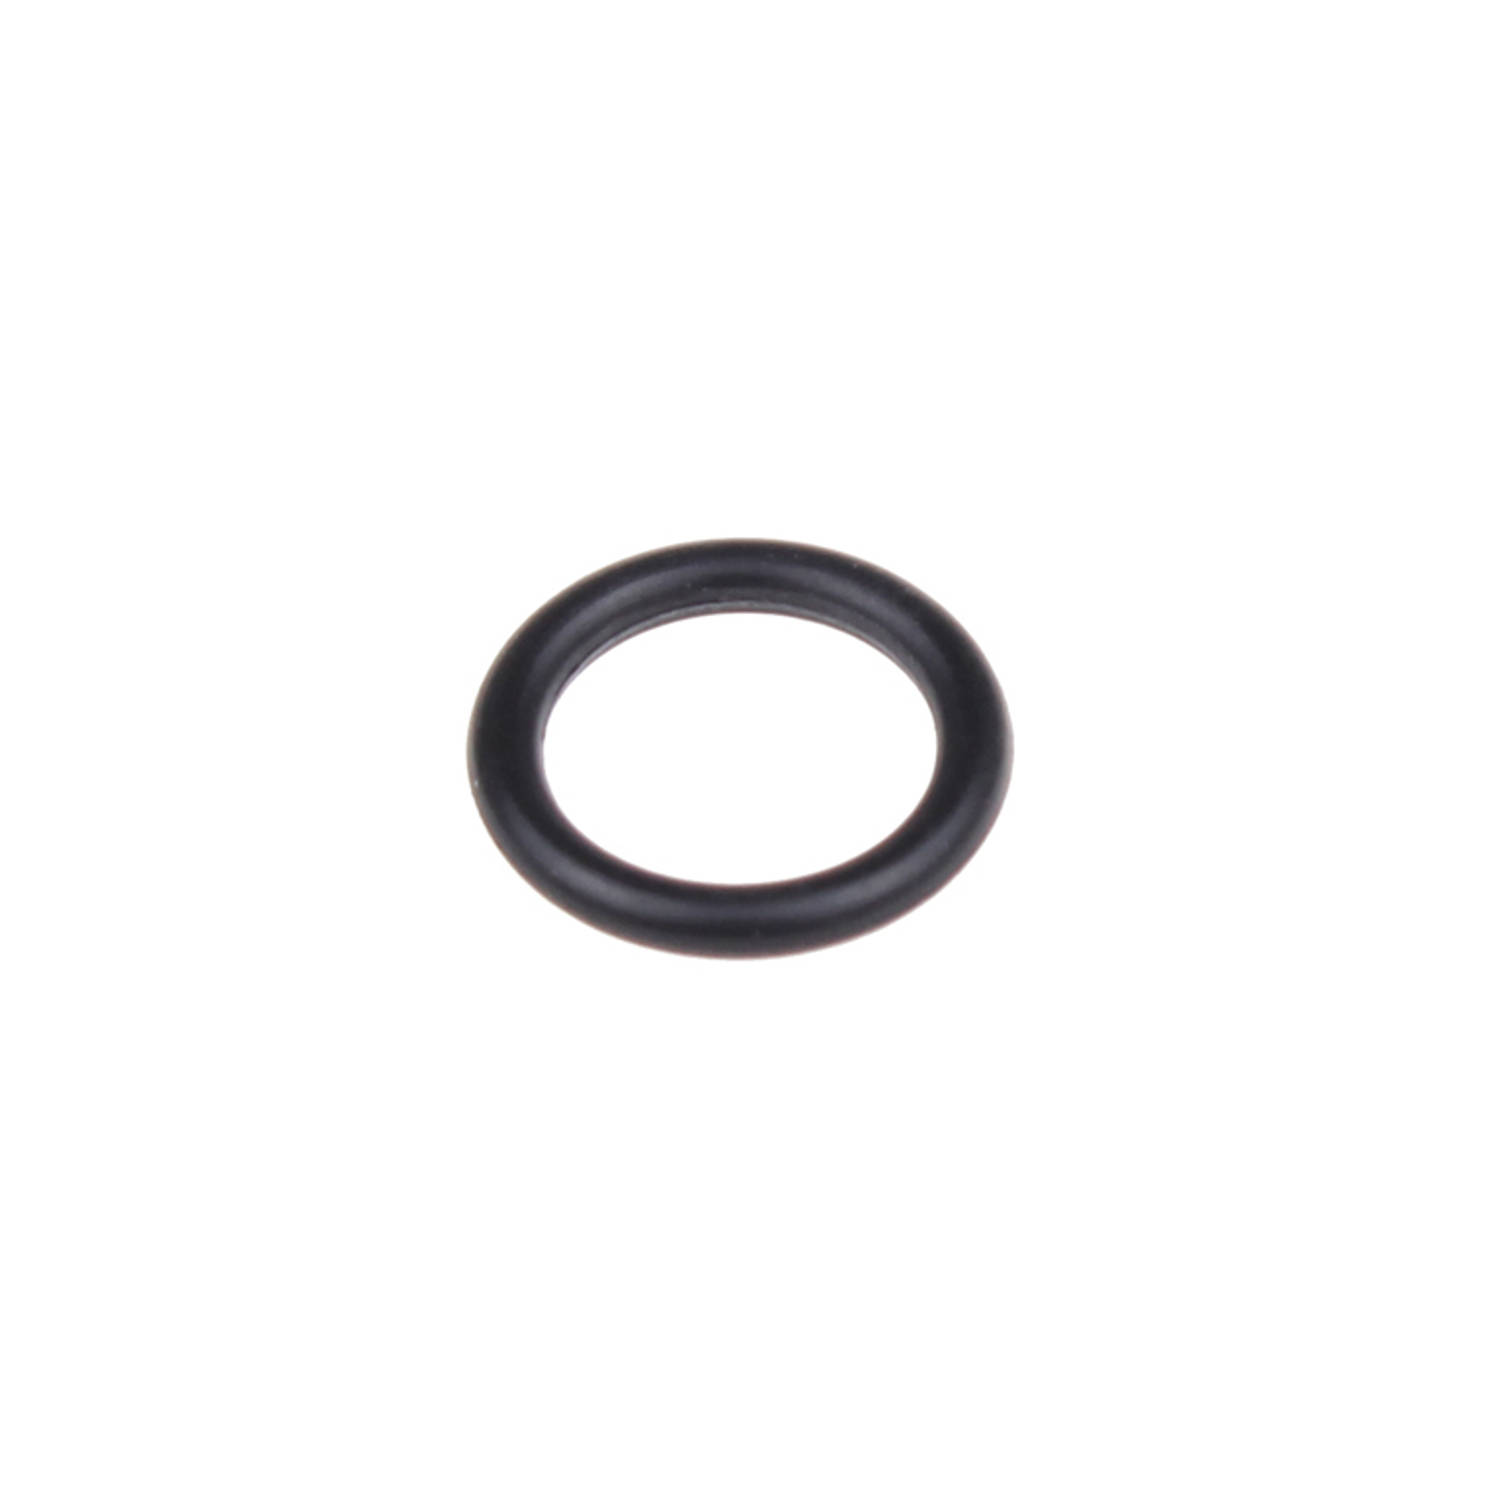 KARCHER - DICHTING O-Ring D. 10 X 2 NBR 70 - 63621510